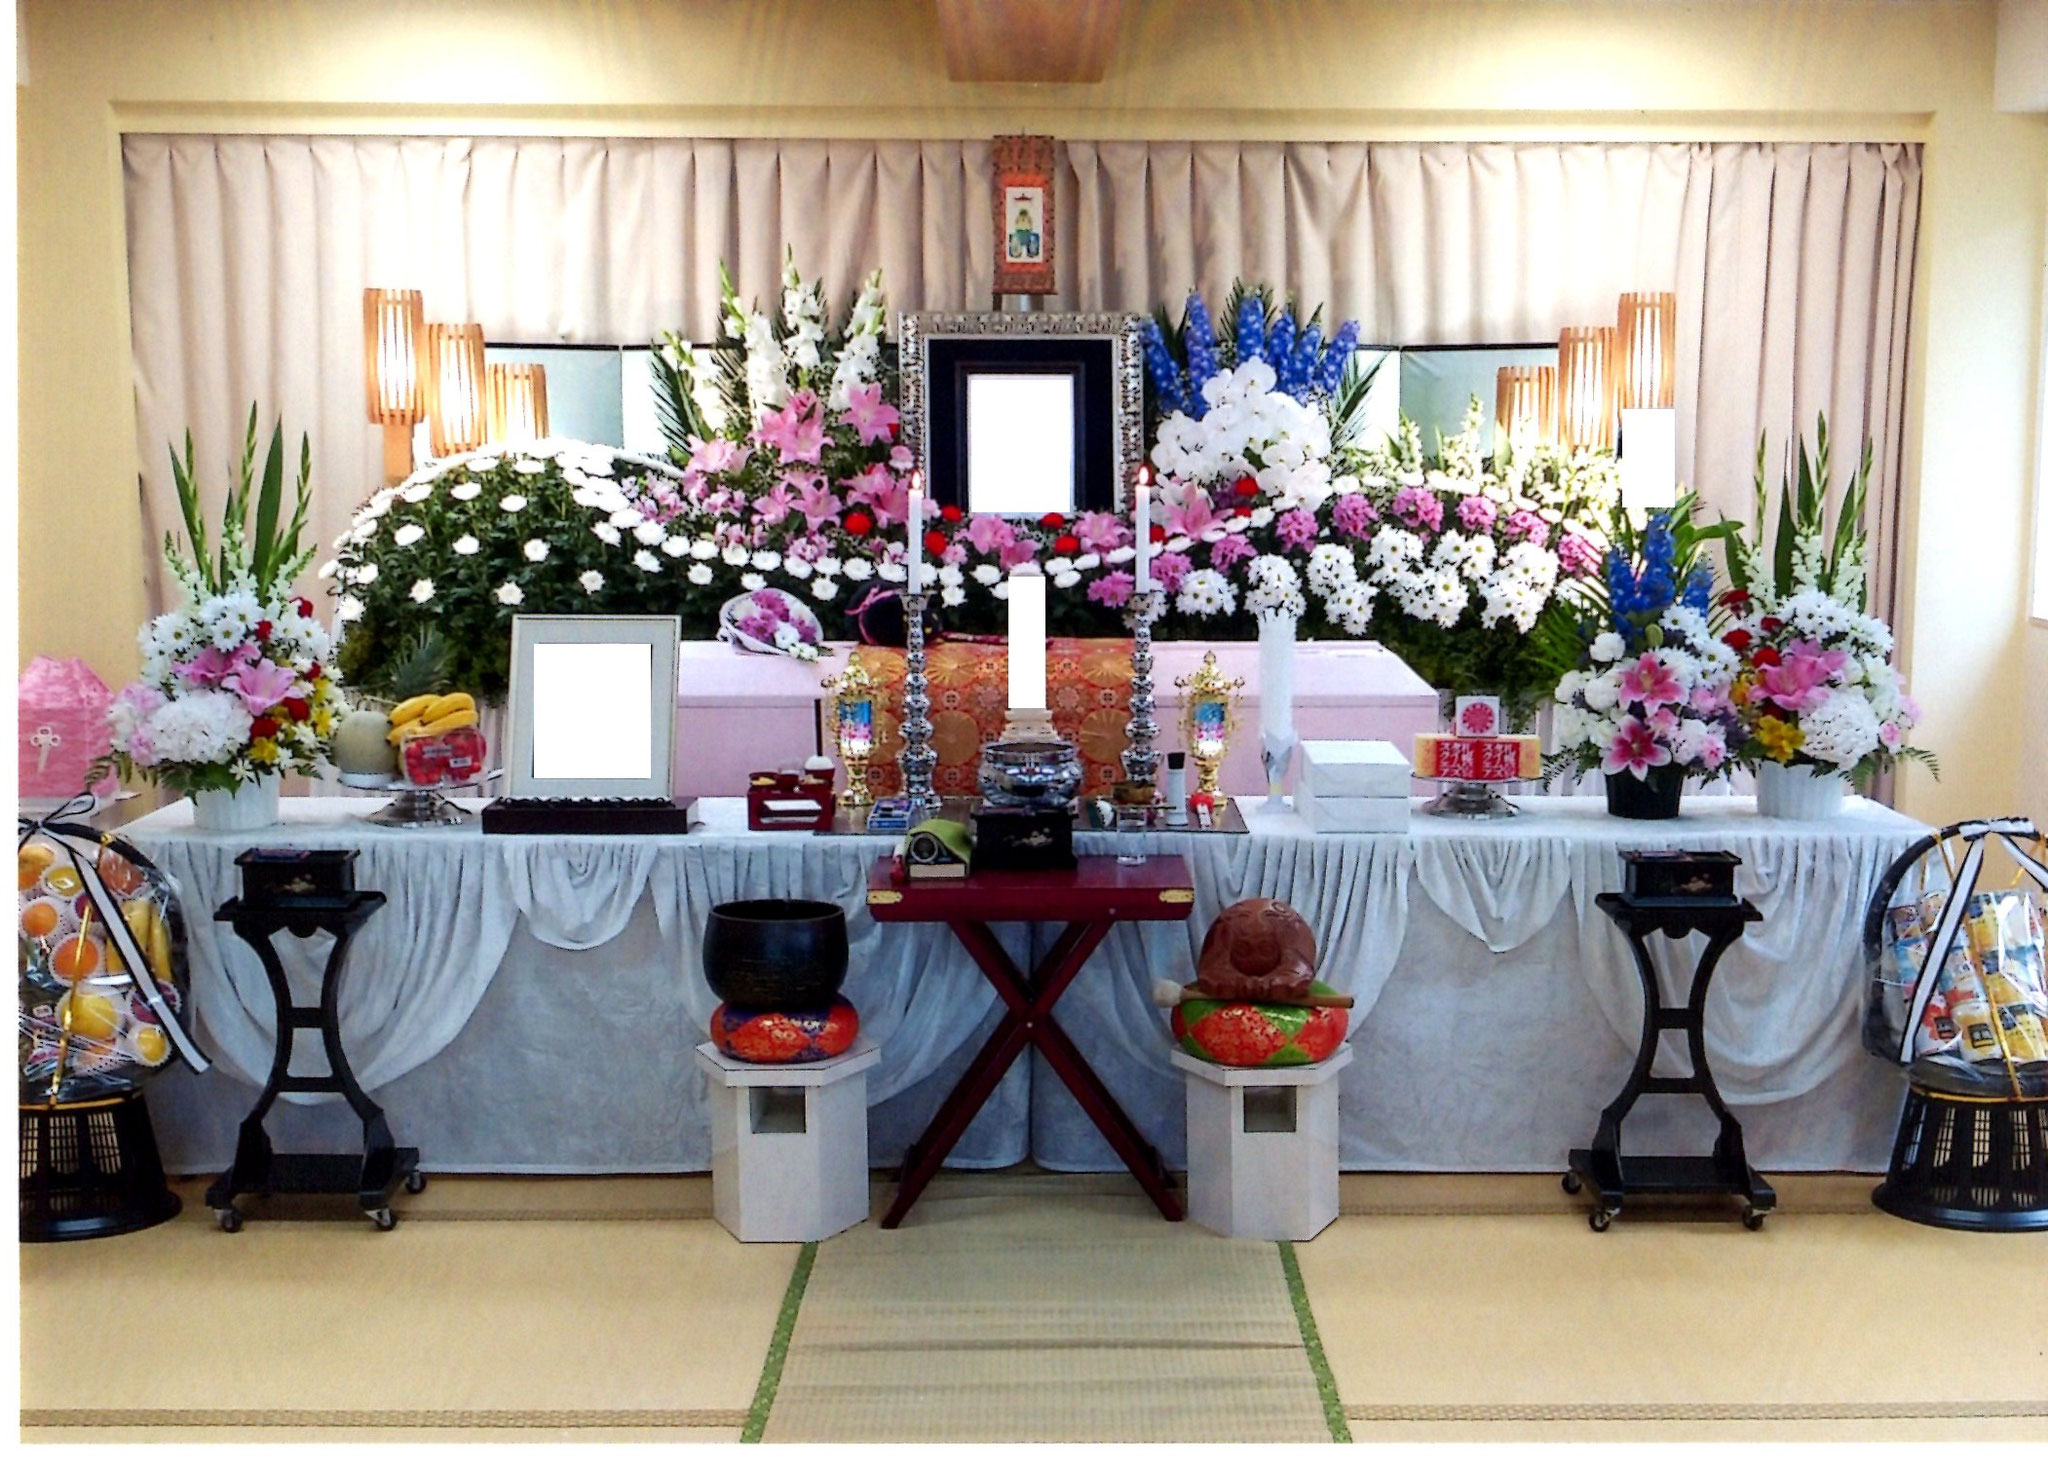 札幌市での家族葬・葬儀ならメモリーズてんそうへ。寺院葬プランの一例です。